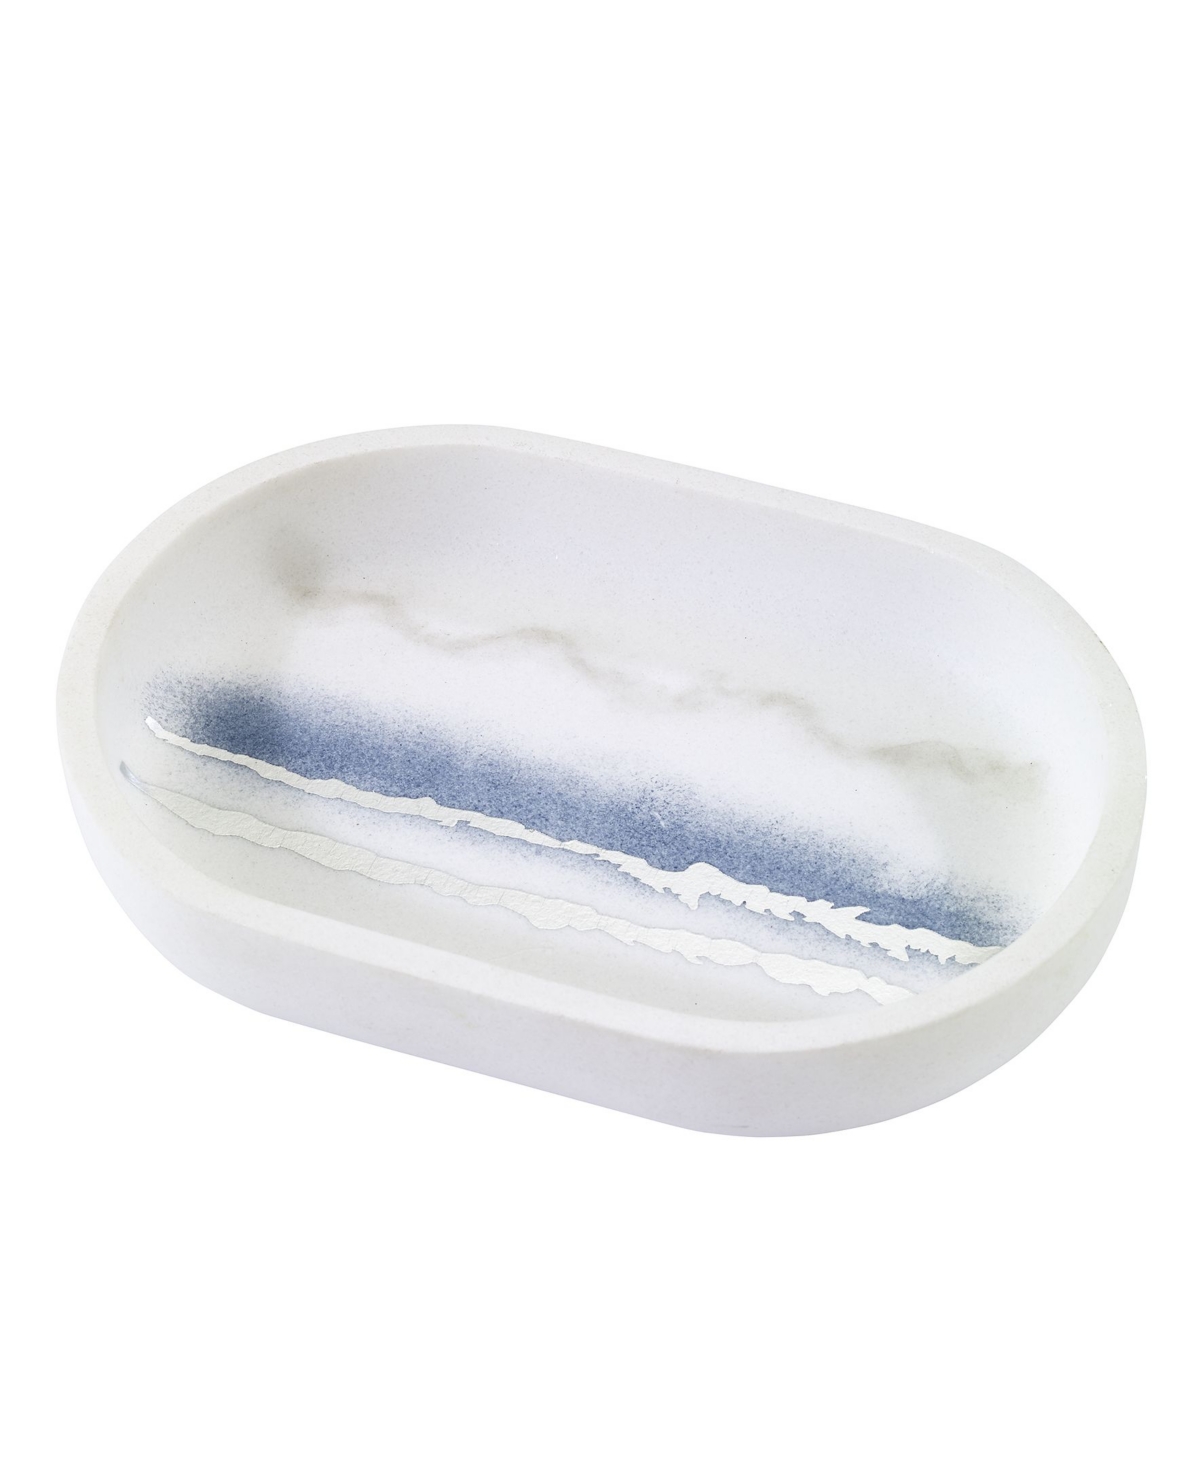 Vapor Soap Dish - Silver